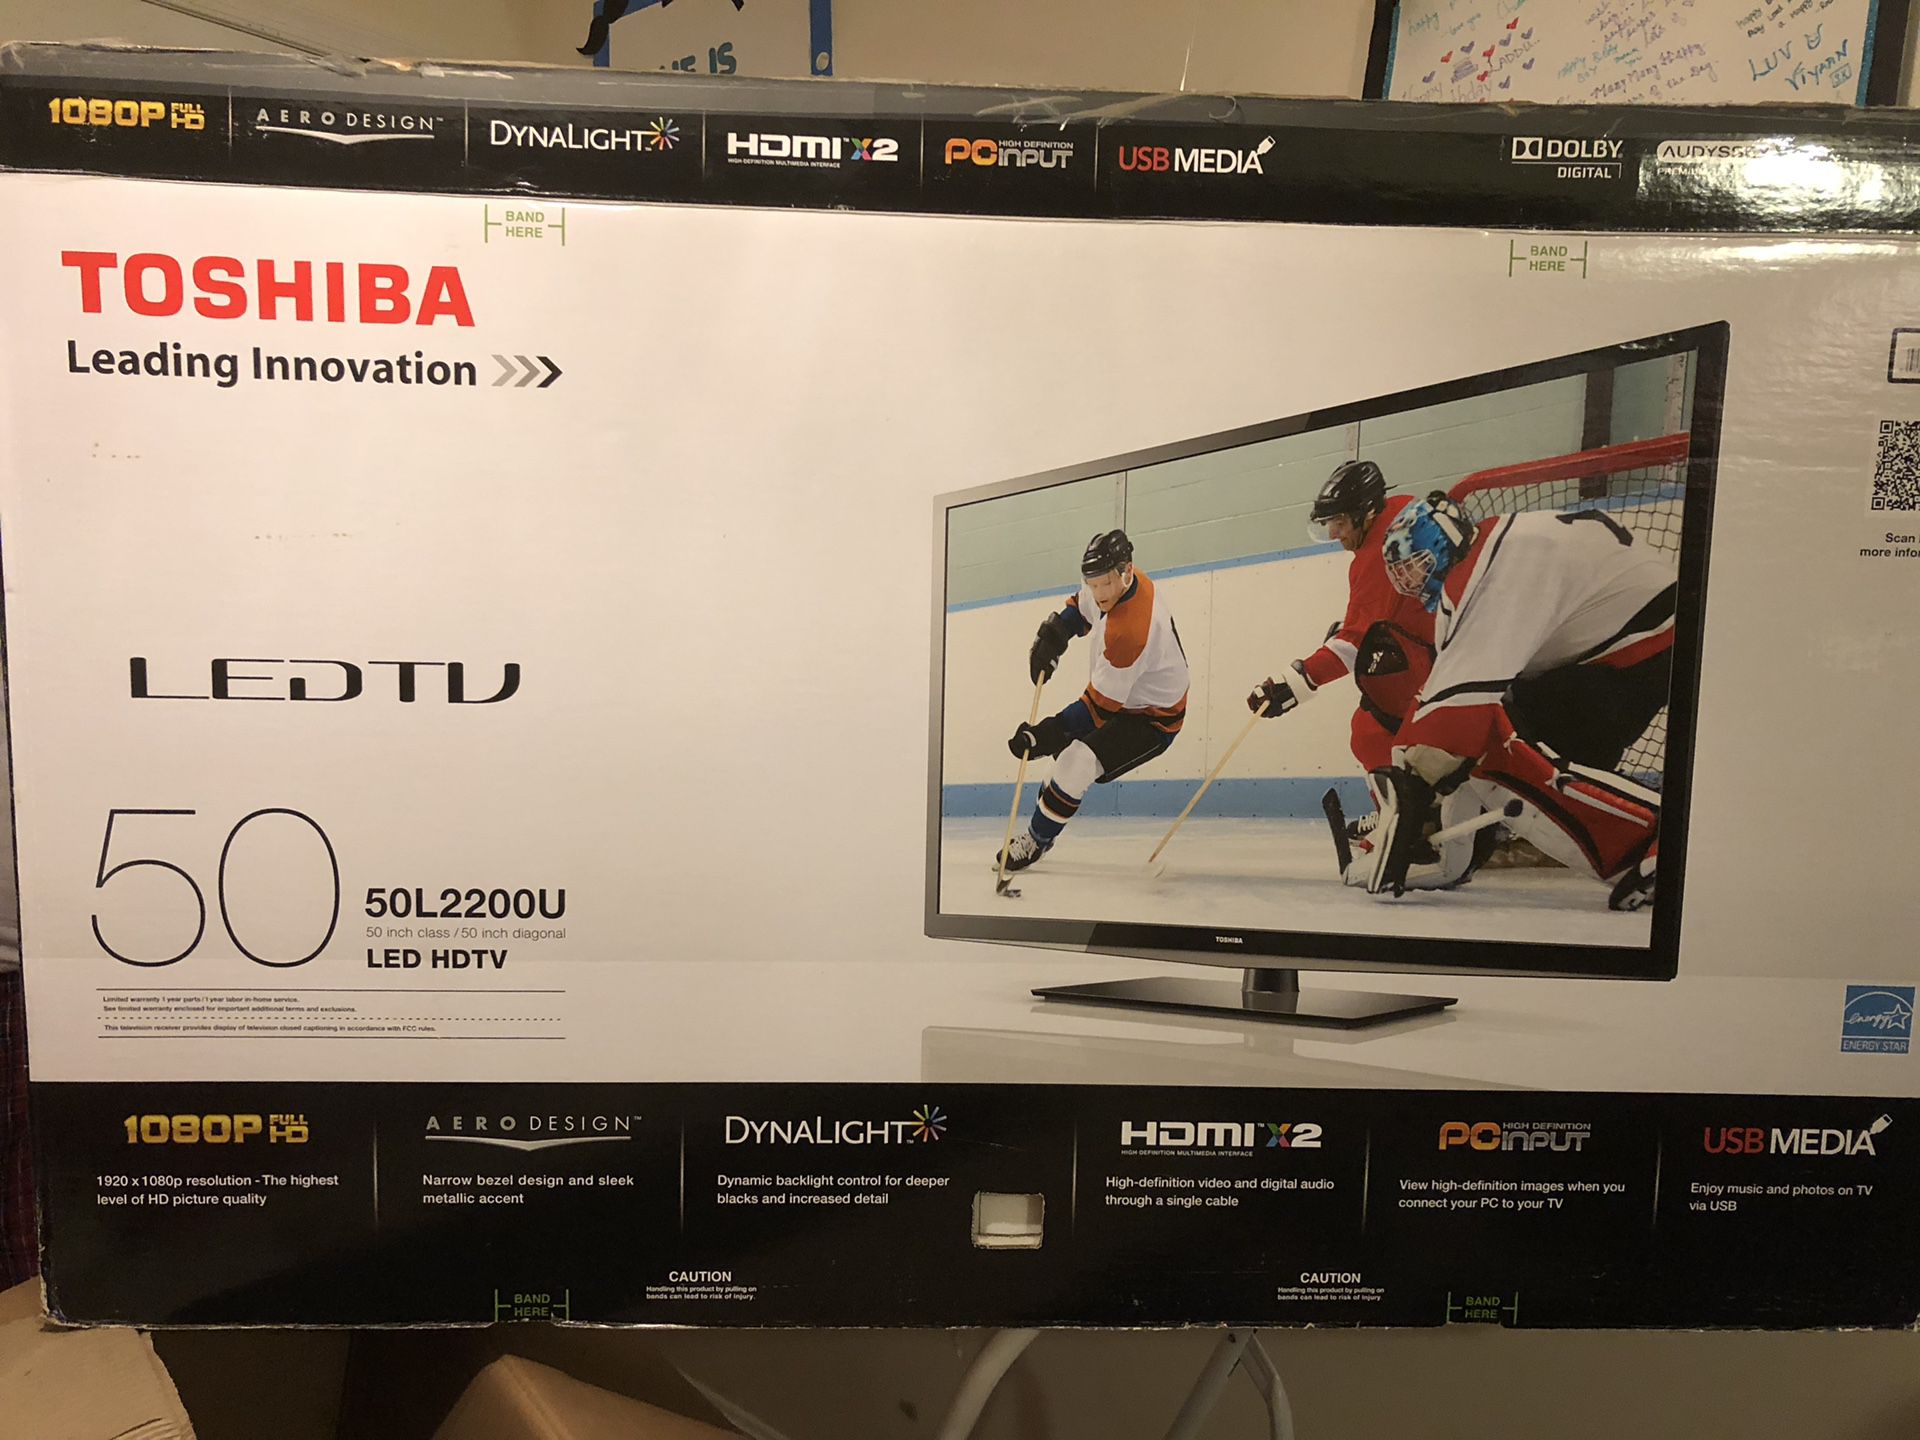 Toshiba LED TV